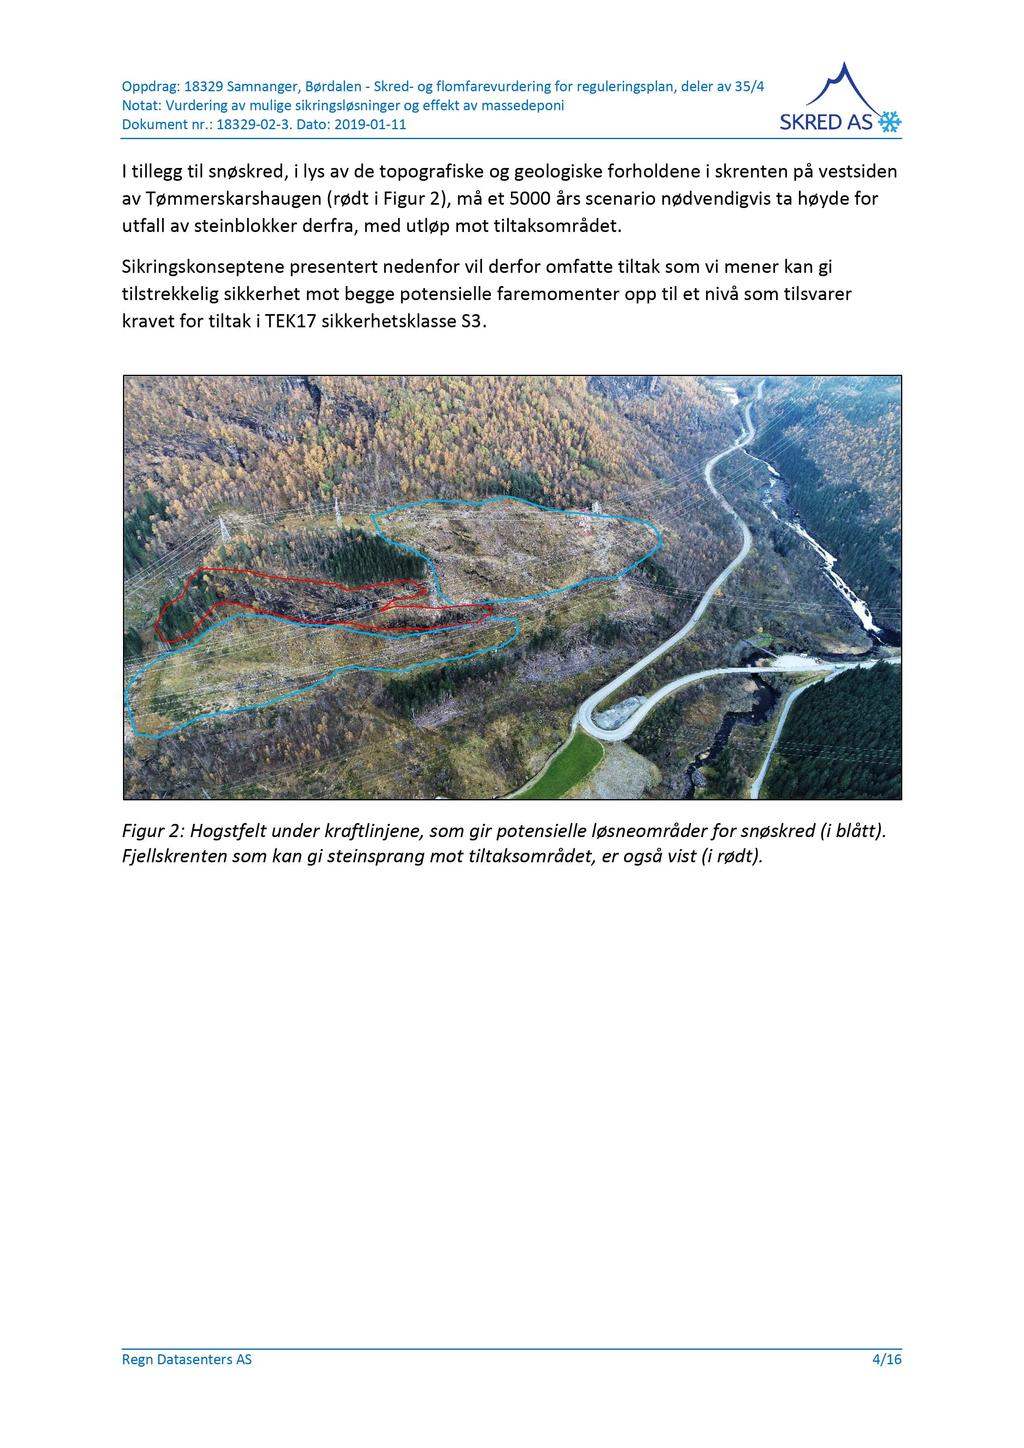 Oppdrag: 18329 Samnanger, Børdalen - Skred-ogflomfarevurdering for reguleringsplan, deler av 35/4 I tillegg til snøskred, i lys av de topografiske og geologiske forholdene i skrenten på vestsiden av